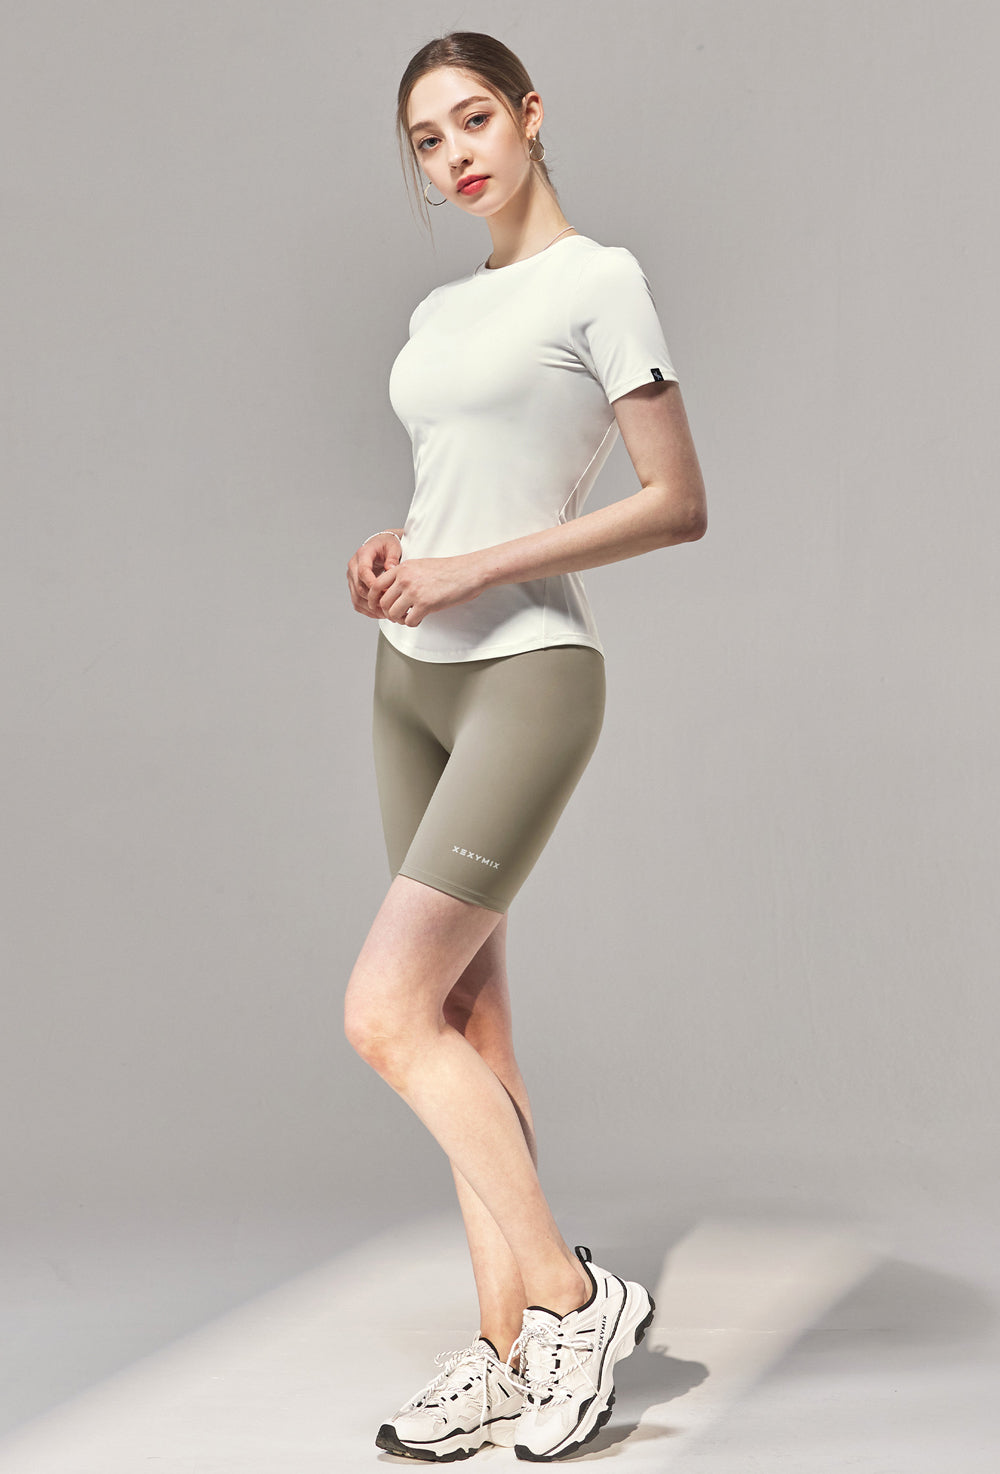 Black Label 360N Leggings 3.5 Shorts - Safari Gray